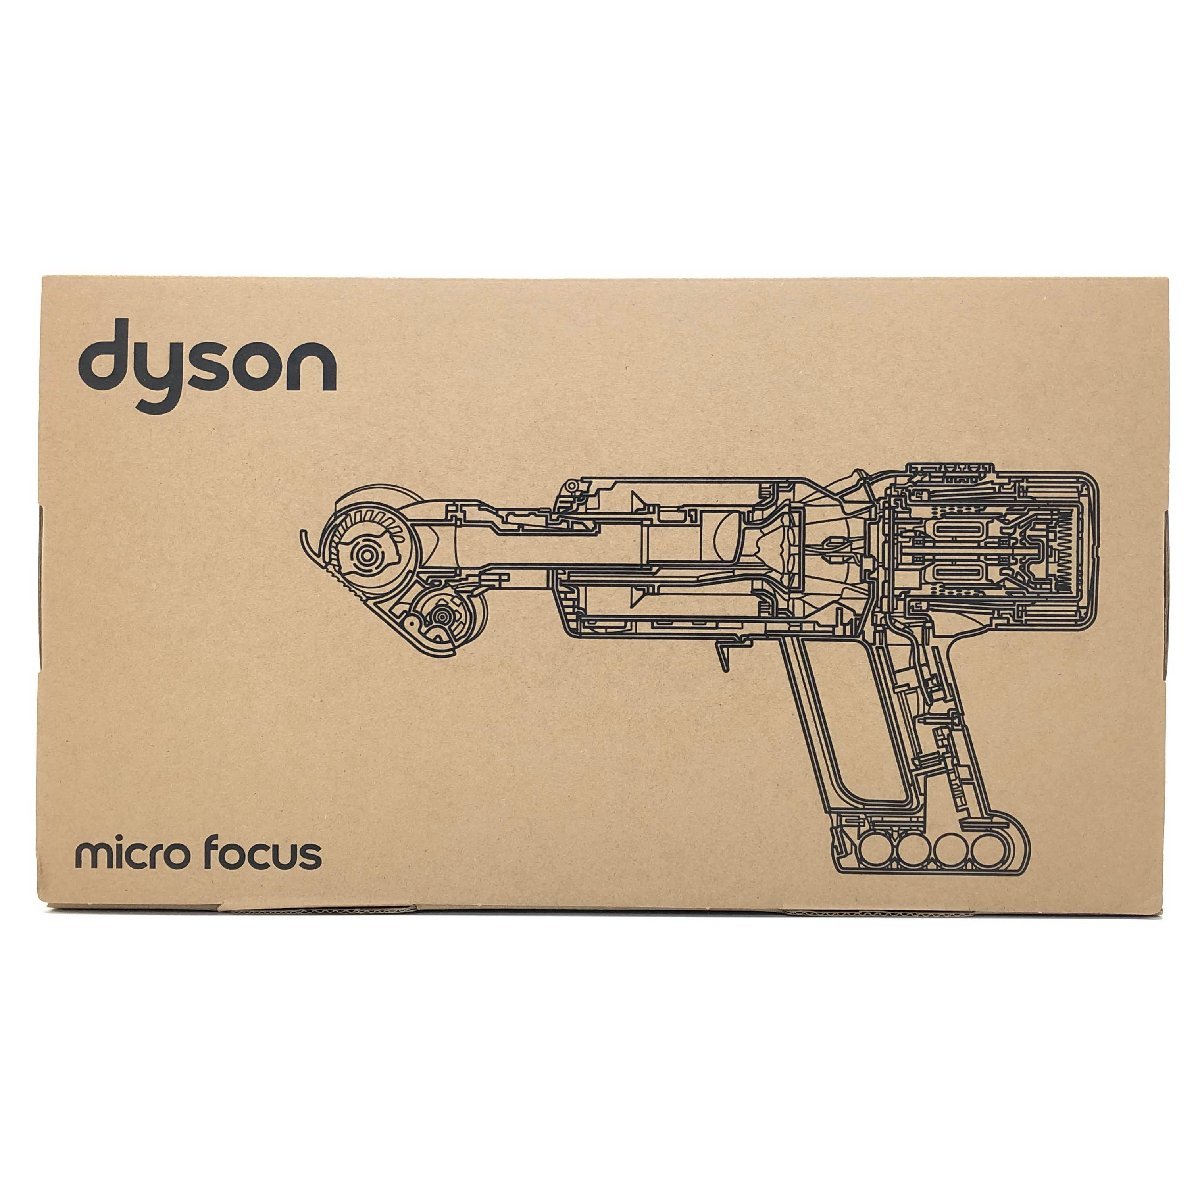 【開封済み・未使用】ダイソン Micro Focus Clean HH17 コードレス ハンディクリーナー dyson_画像1